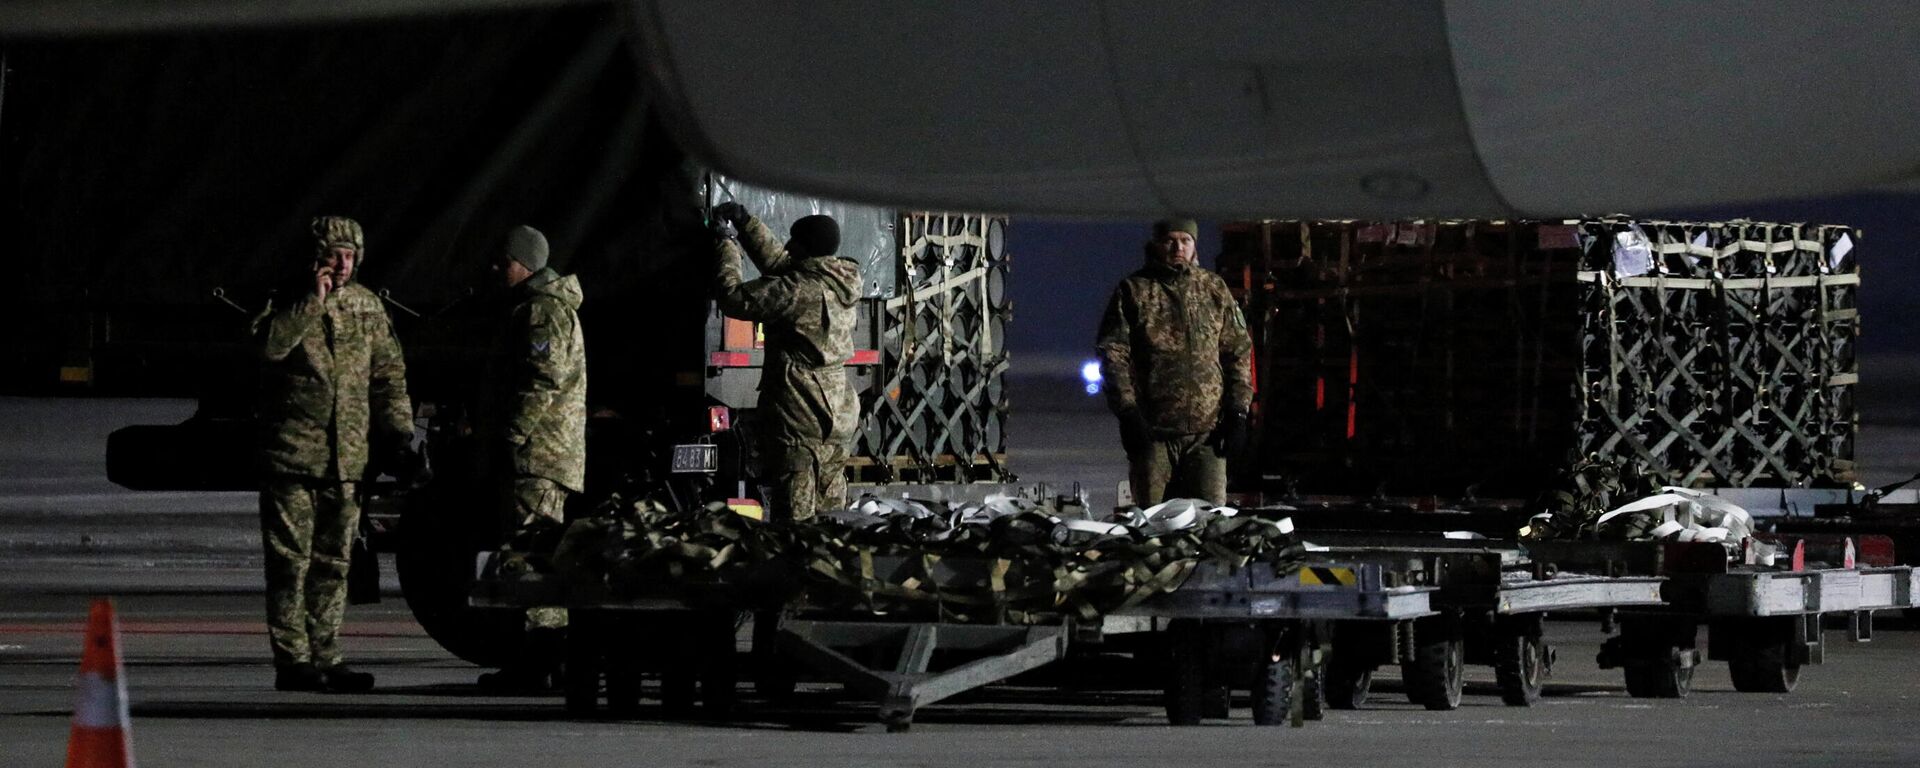 Material é descarregado e entregue como parte da assistência de segurança dos EUA à Ucrânia, no Aeroporto Internacional de Boryspil, Kiev, 25 de janeiro de 2022 - Sputnik Brasil, 1920, 12.02.2022